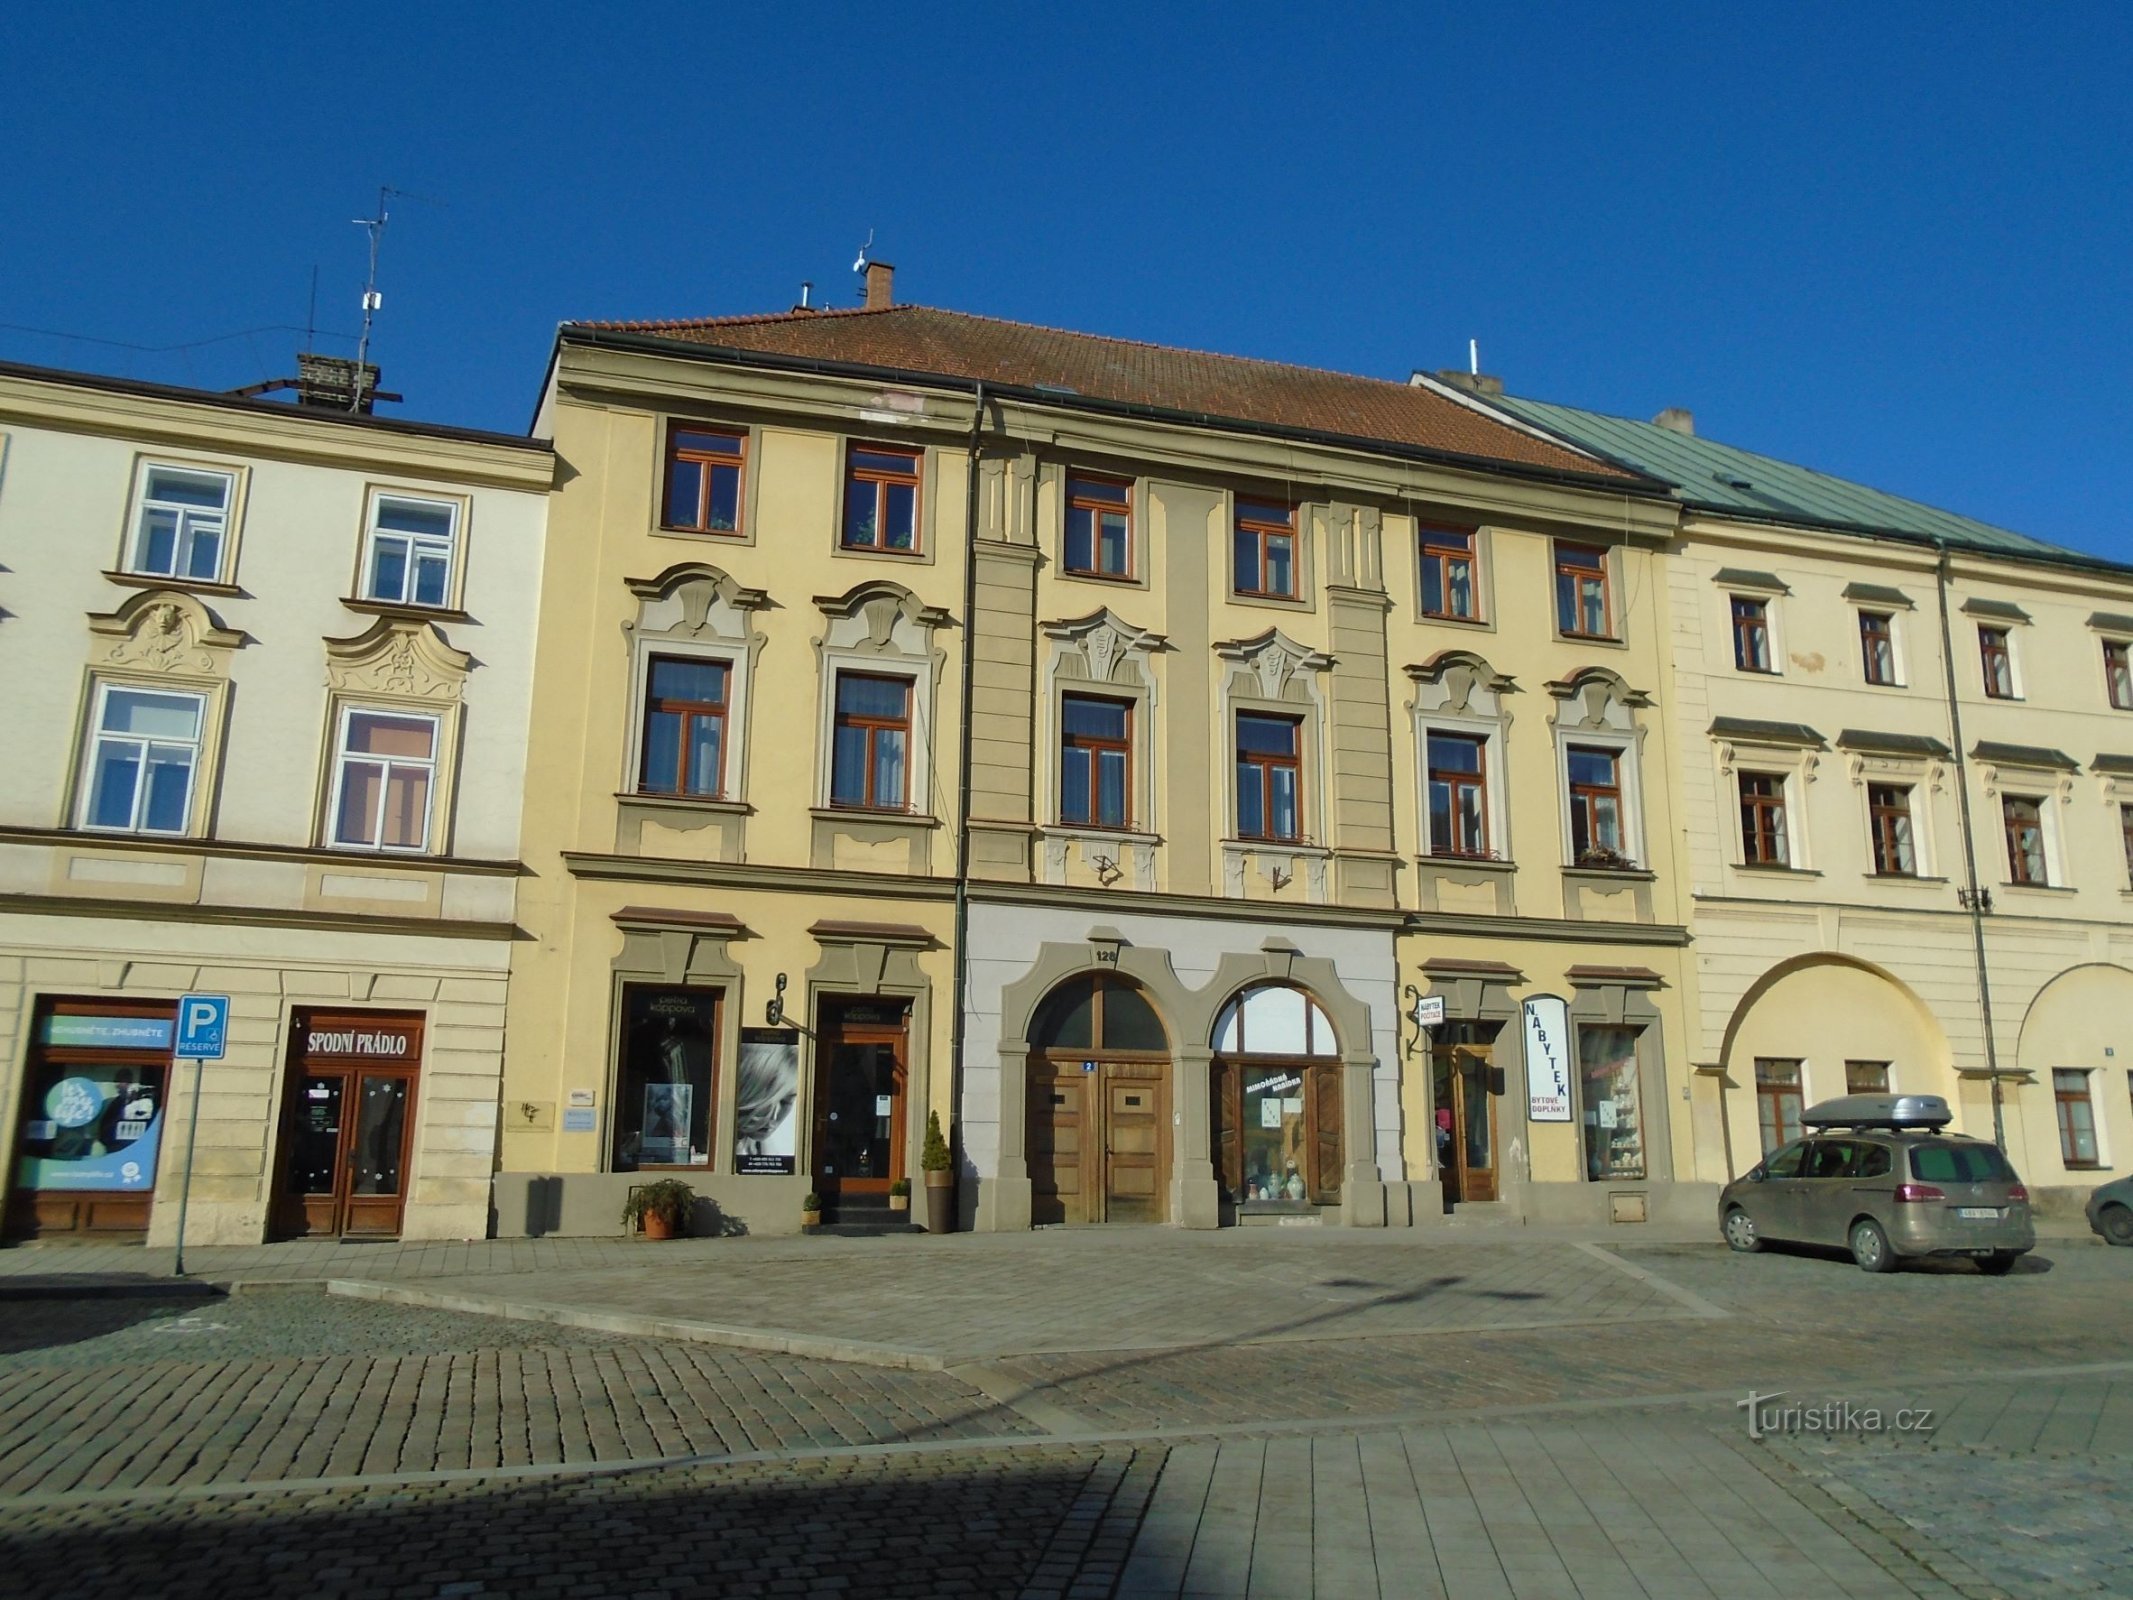 Malé náměstí no. 128 (Hradec Králové, April 25.2.2018, XNUMX)